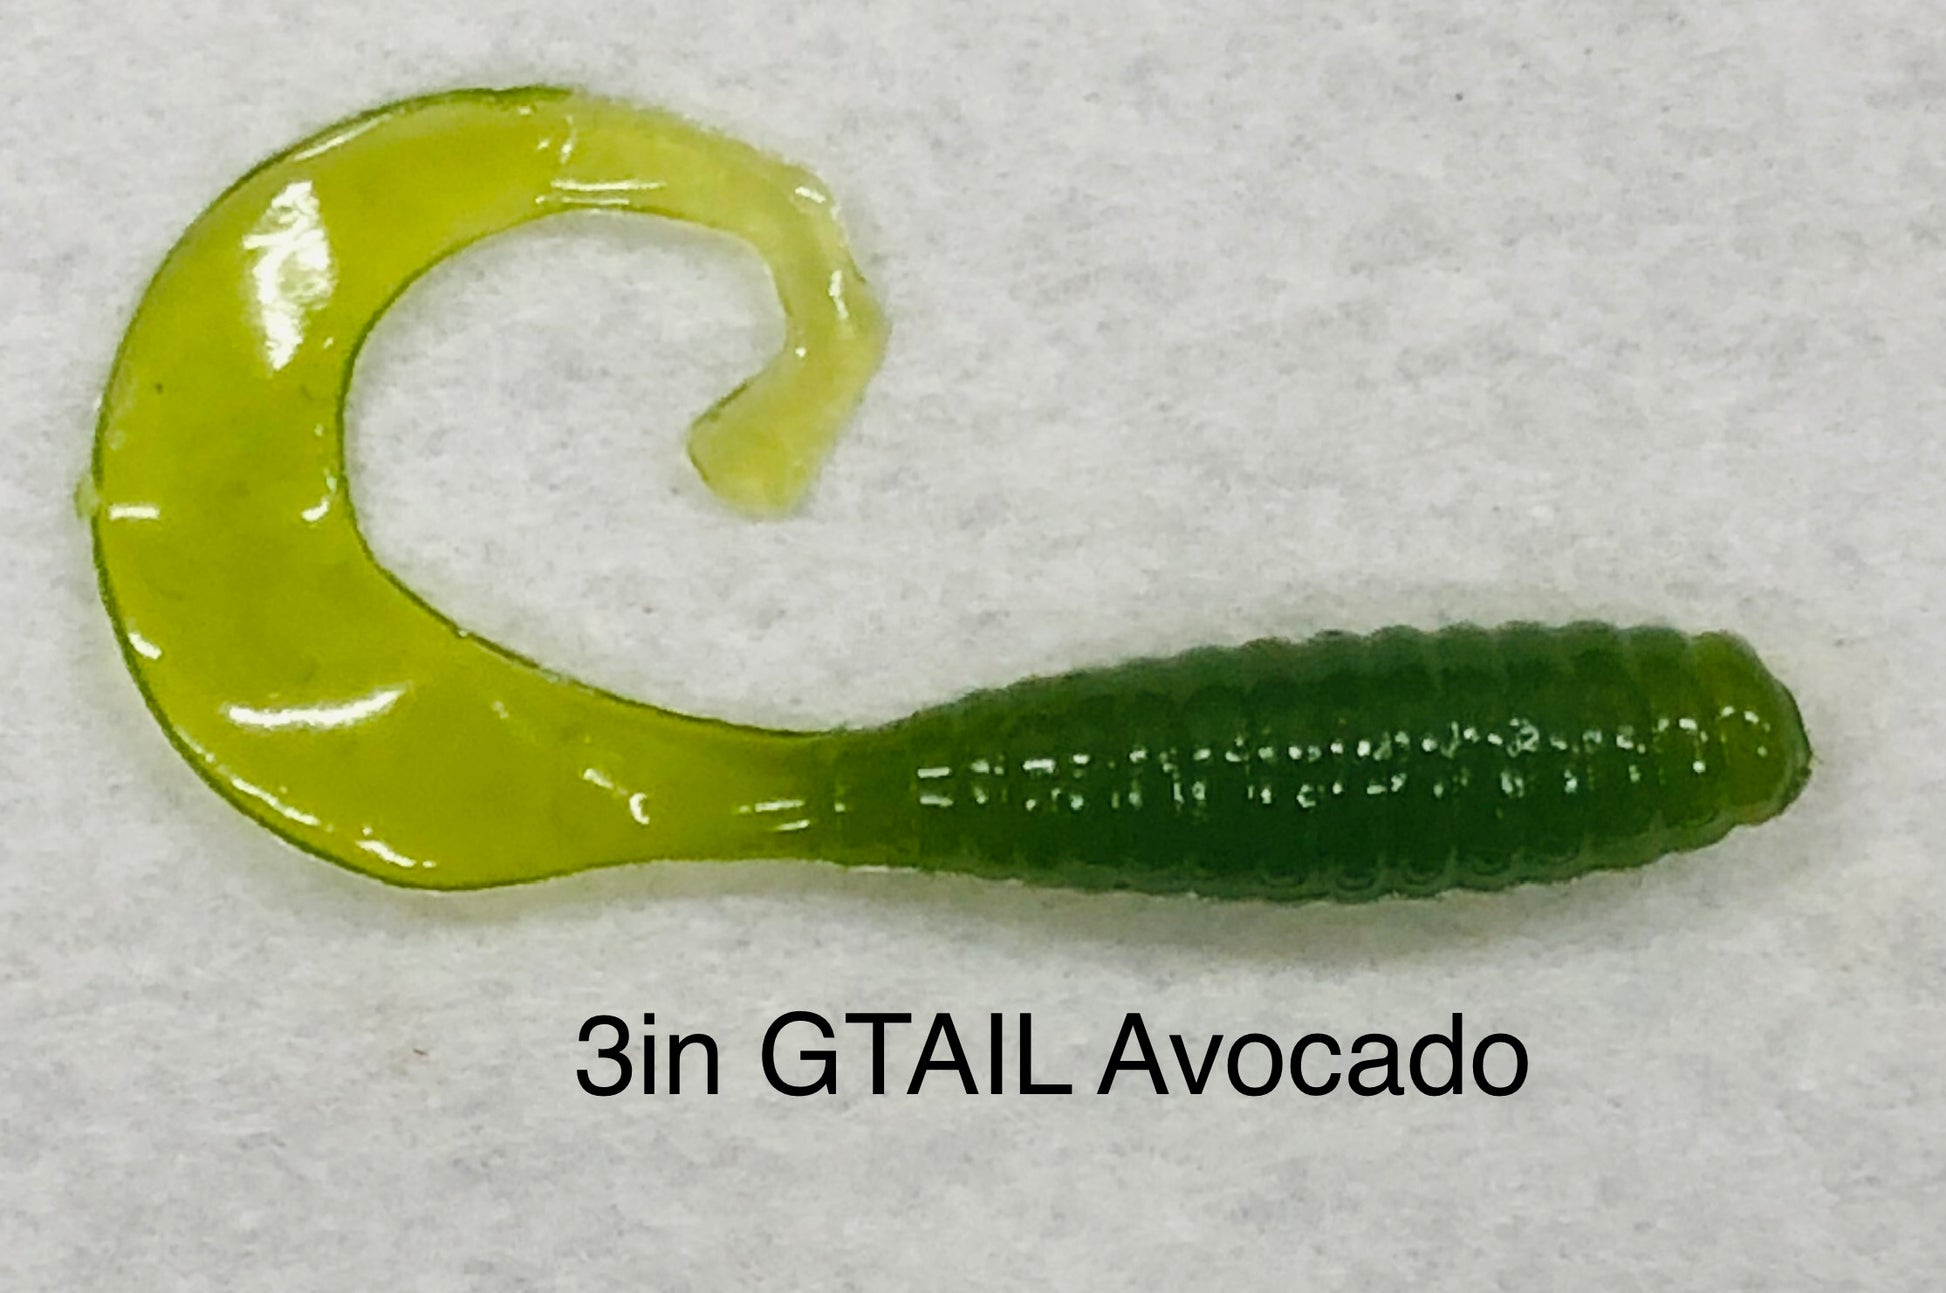 gitzit-g-tail-grub-avacodo-3in-19140